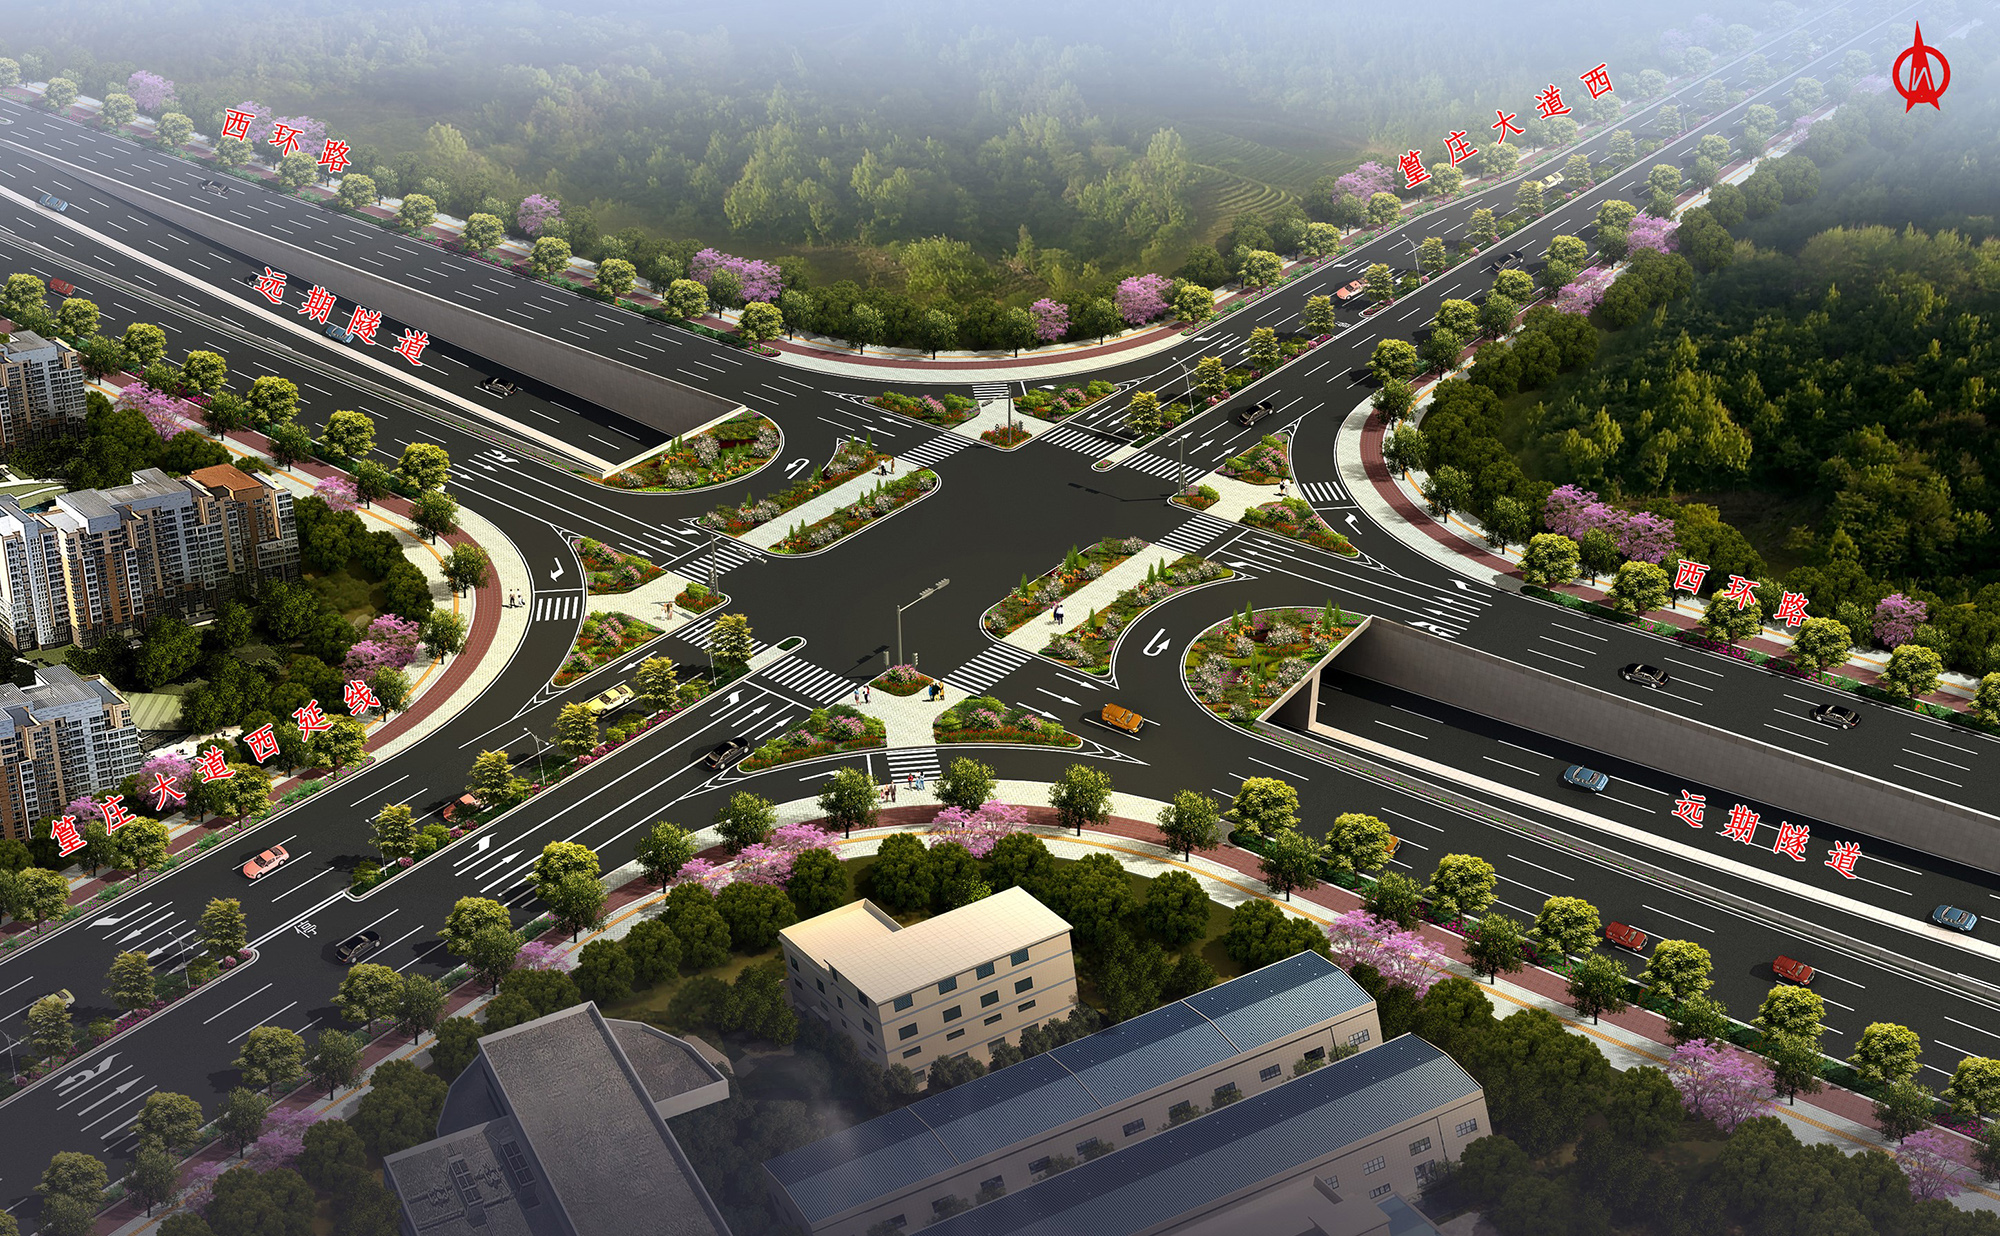 41广中江高速公路杜阮出入口连接线（篁庄大道西延线）工程